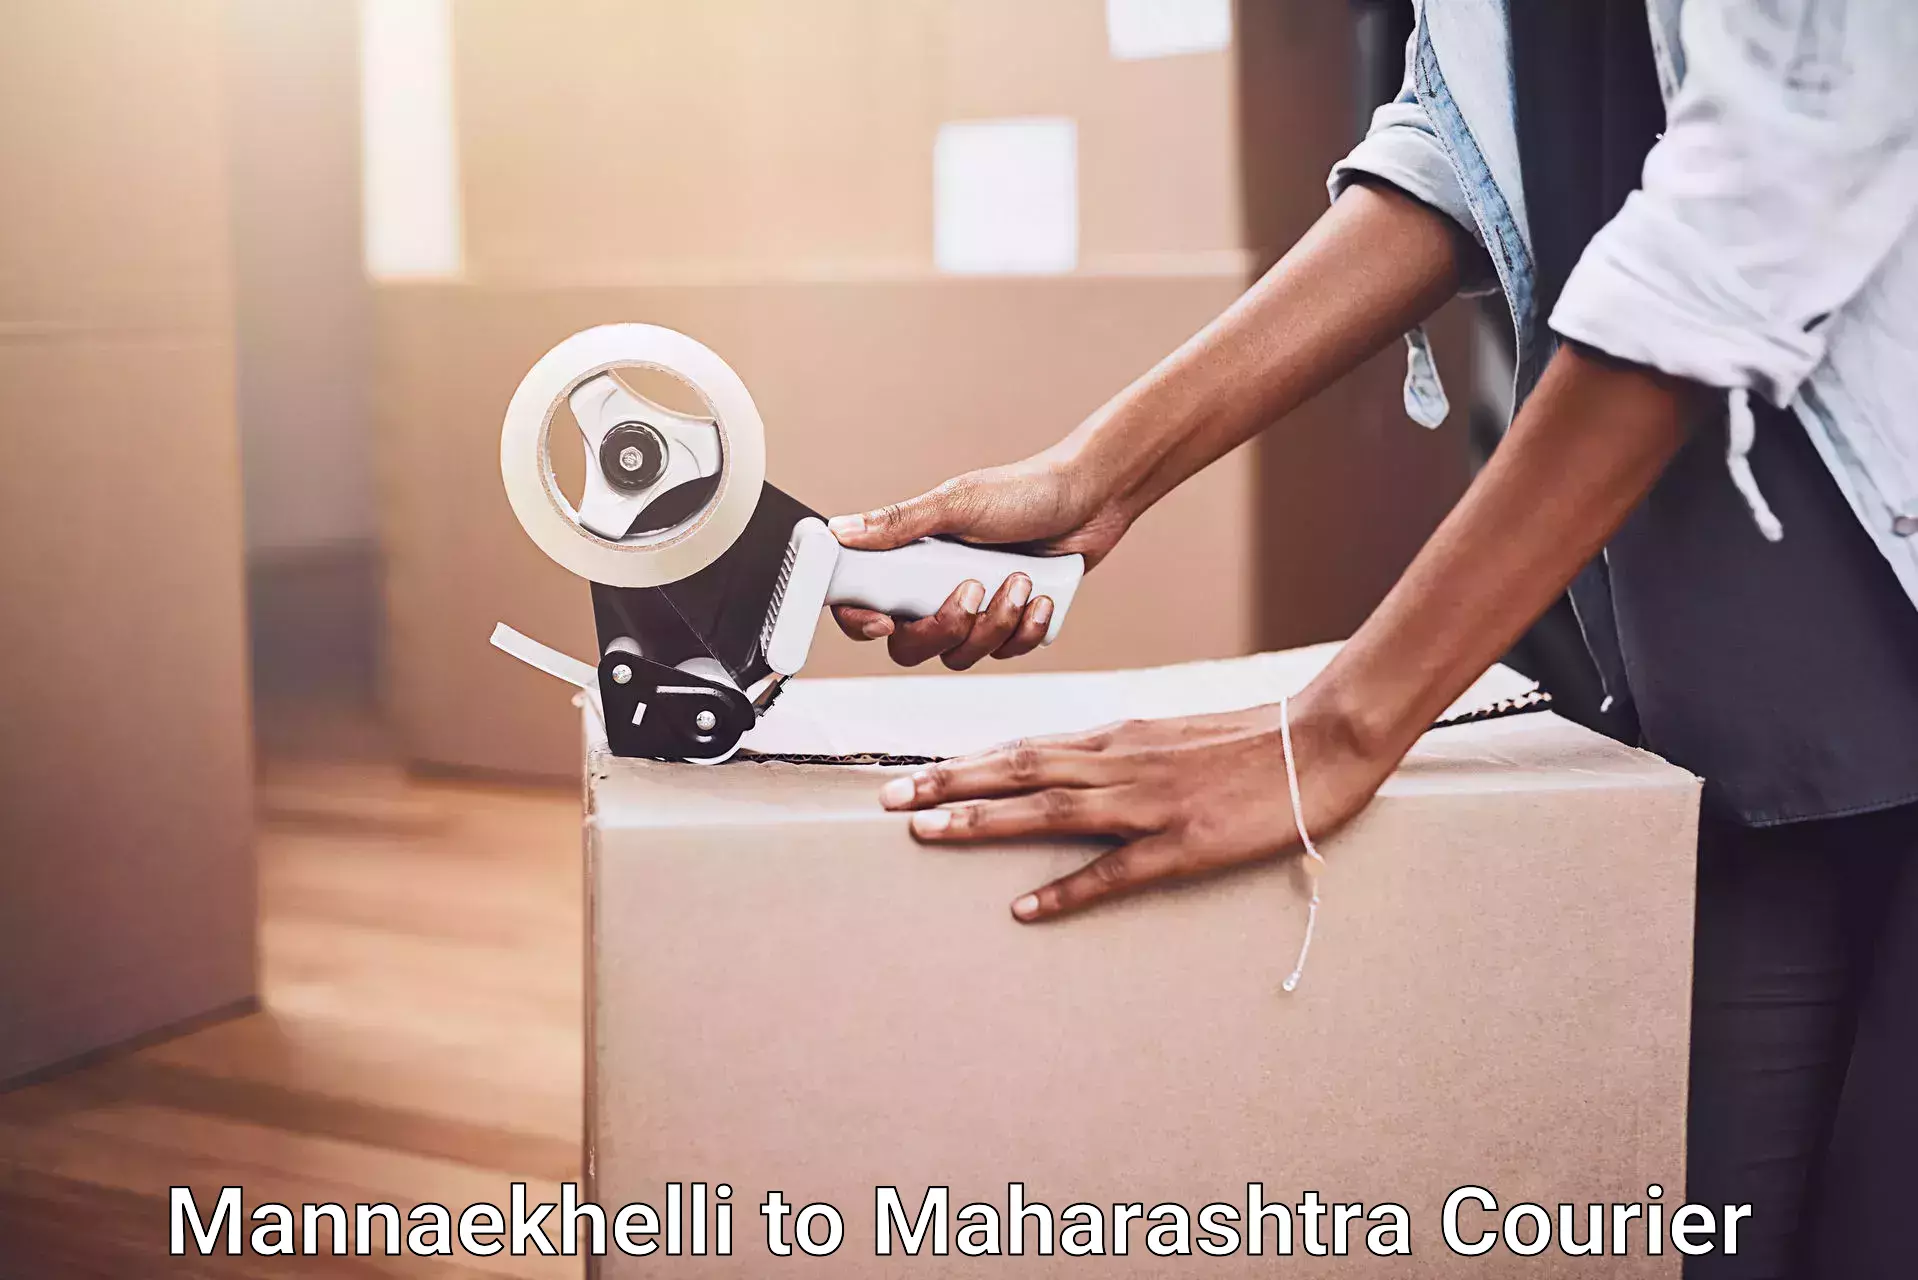 Moving and packing experts Mannaekhelli to Maharashtra